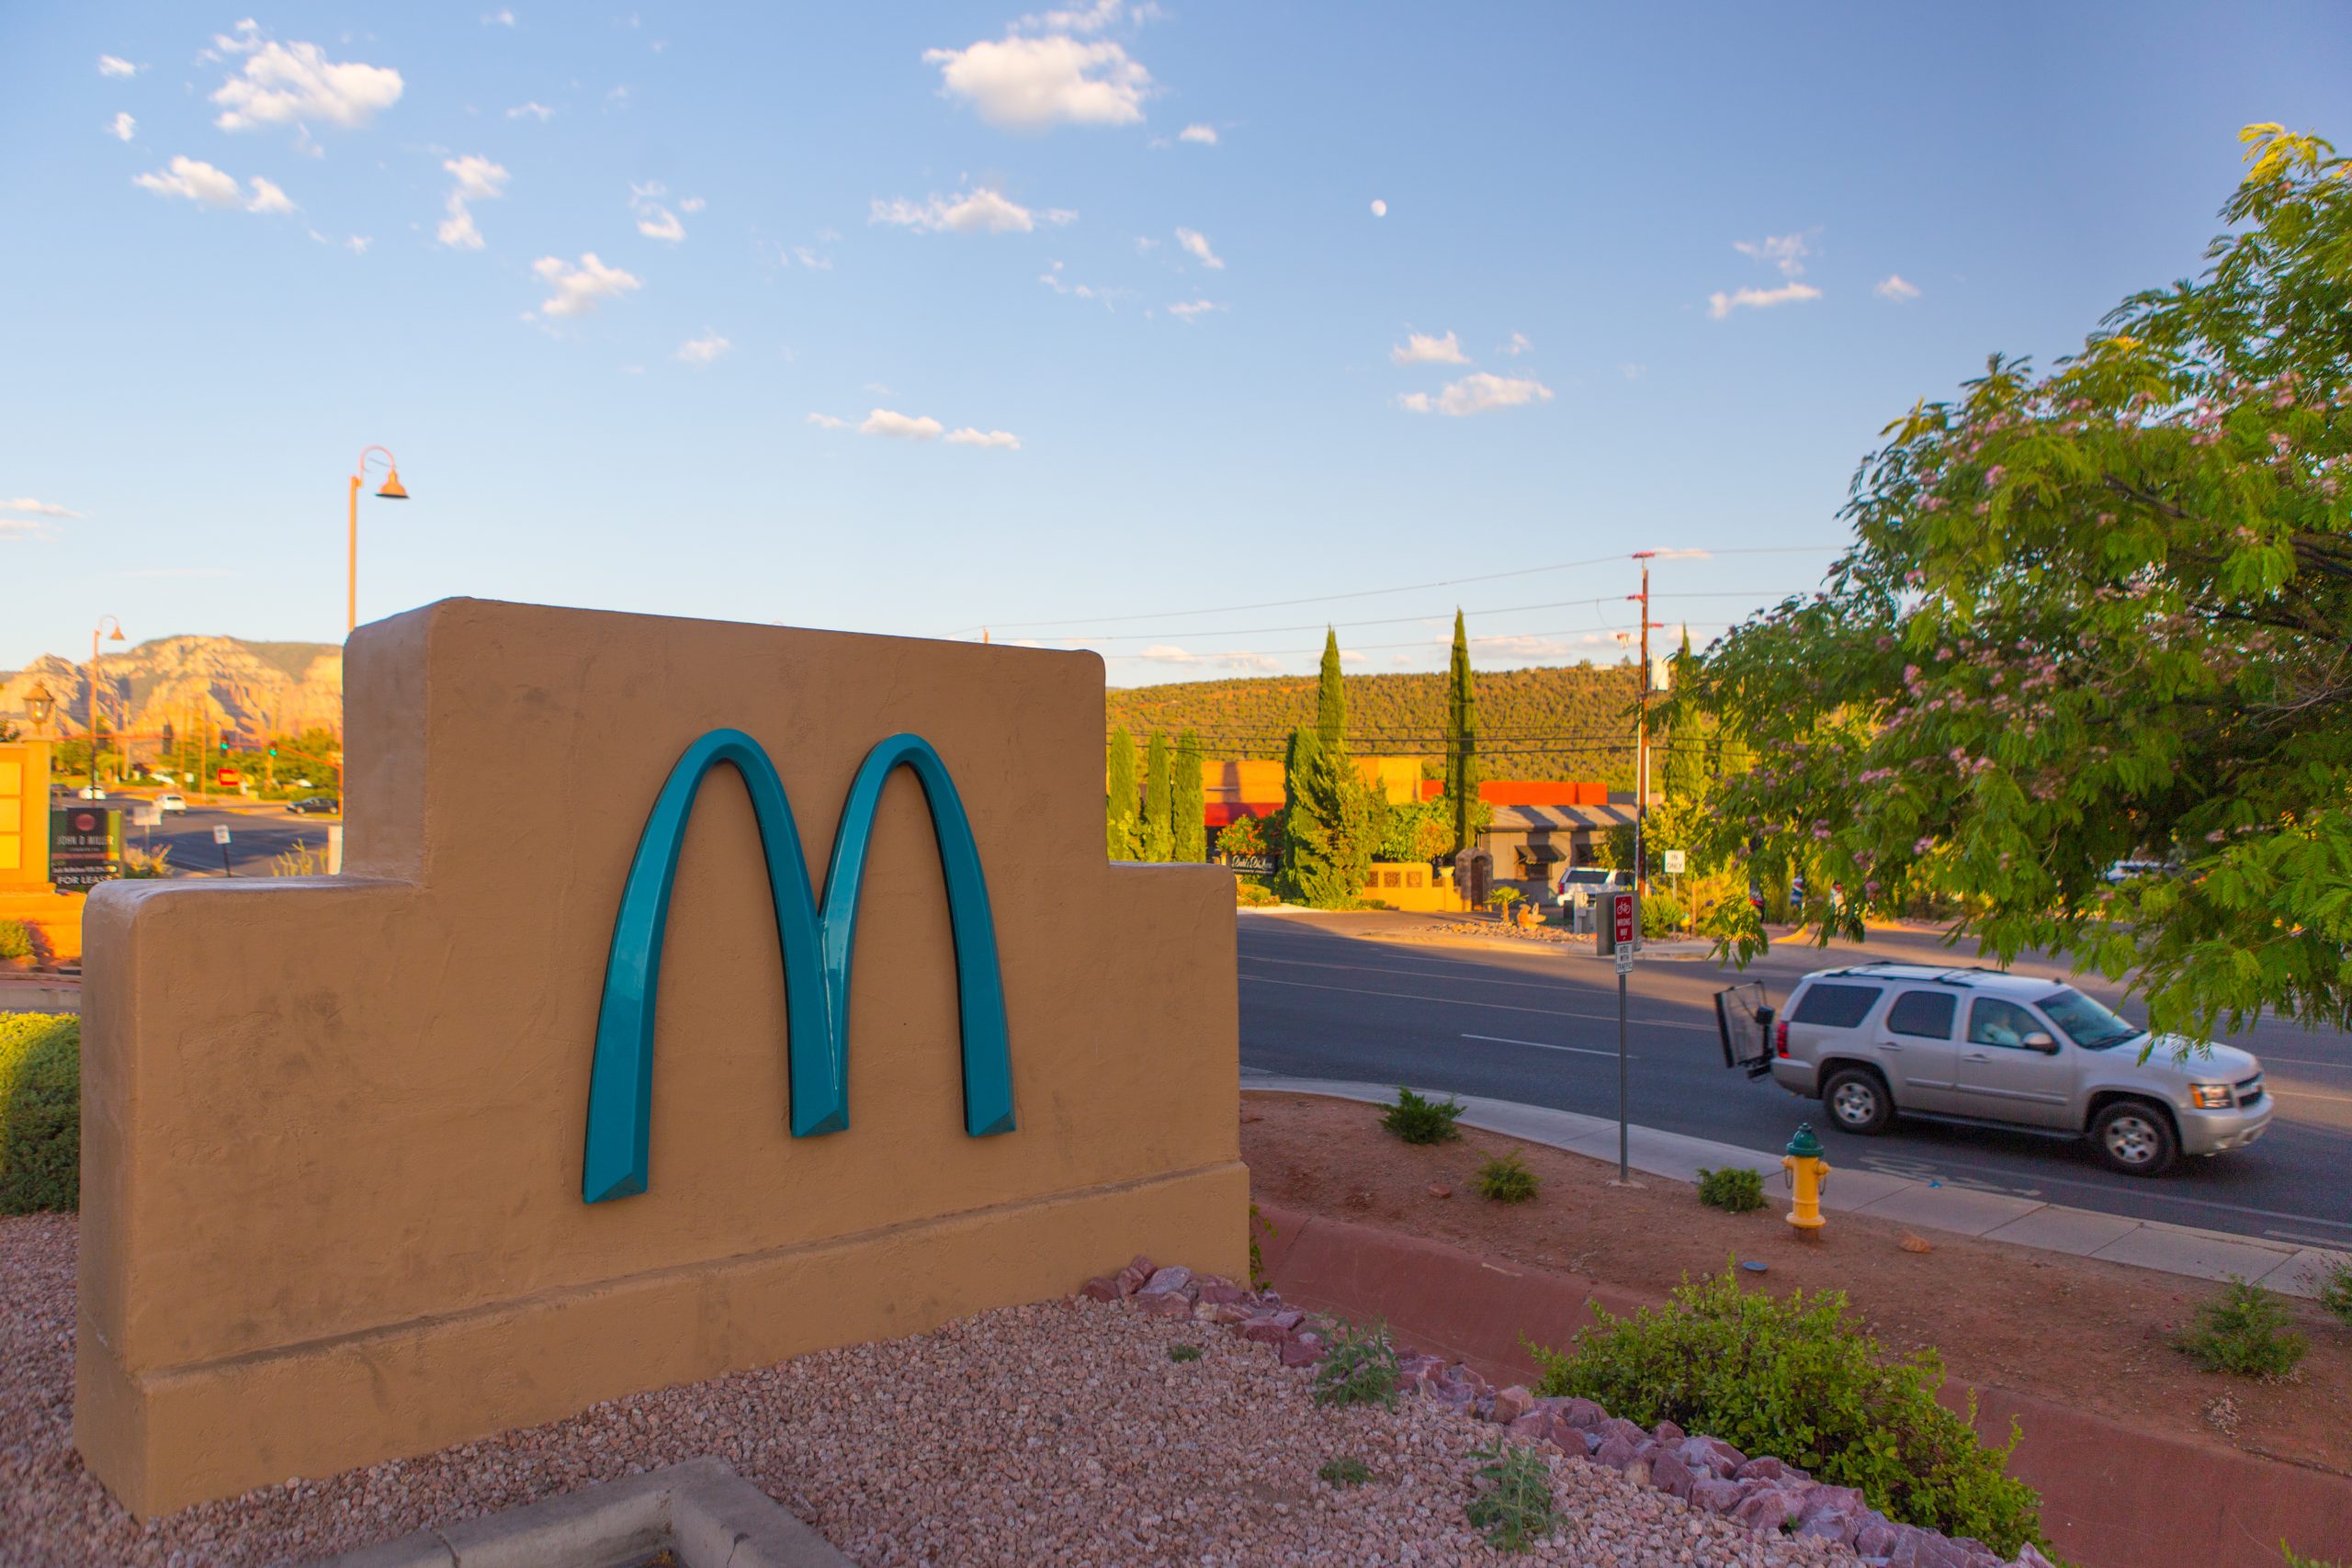 Cliente agride funcionária do McDonald’s por causa de uma palhinha | VÍDEO